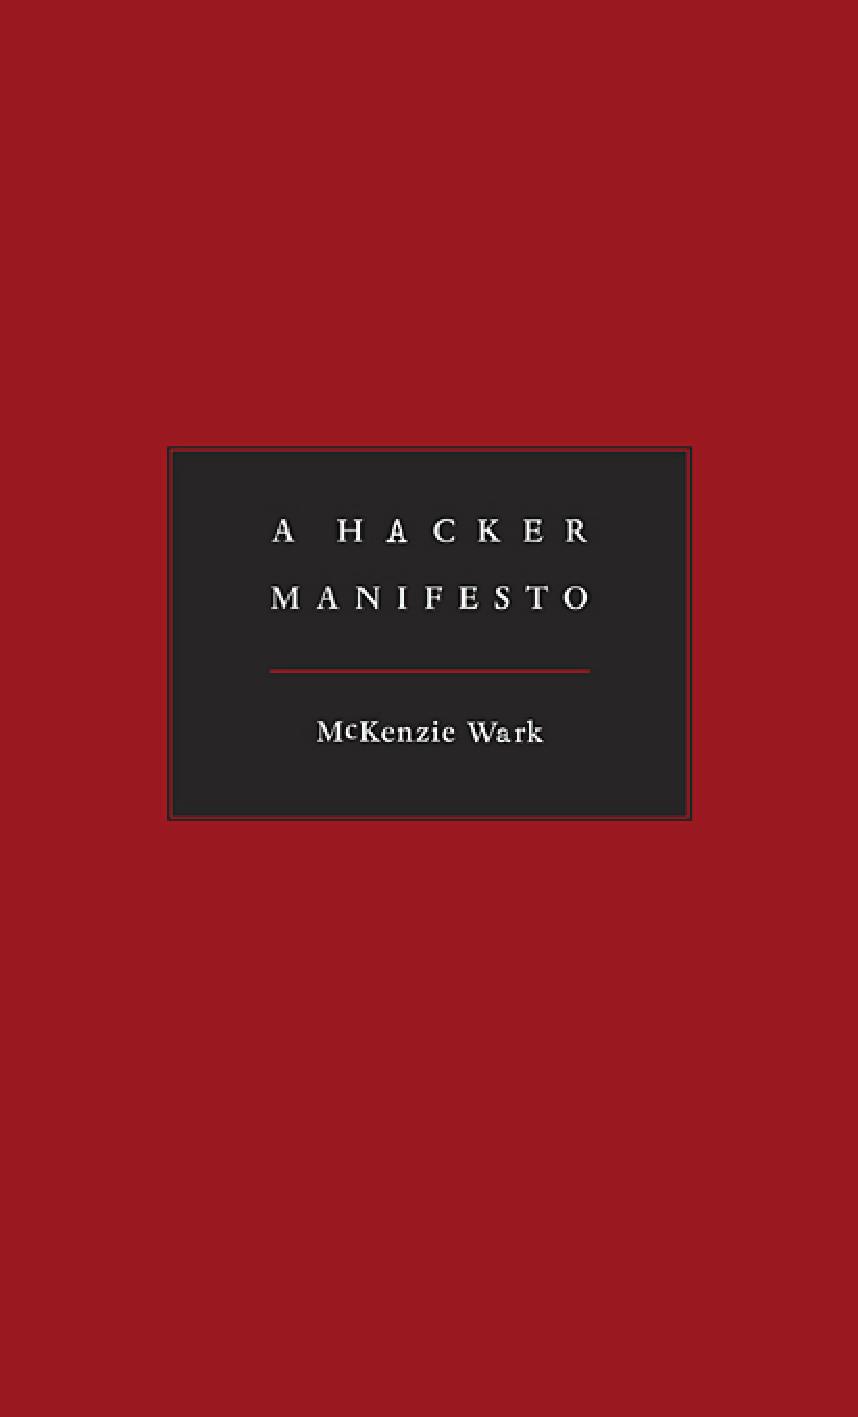 A Hacker Manifesto - Mckenzie Wark